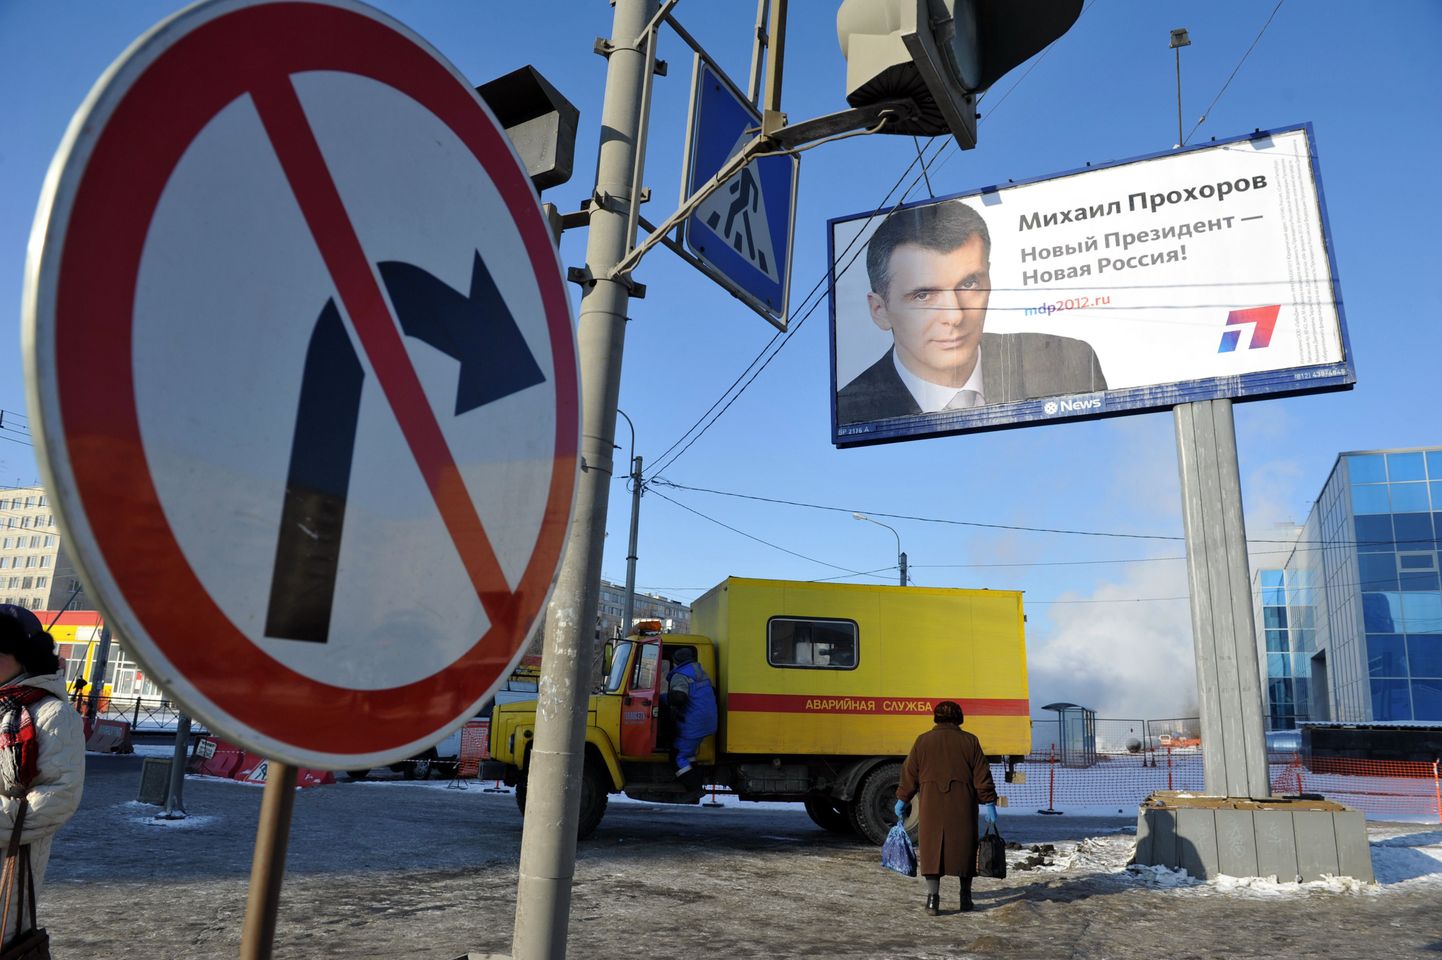 Mihhail Prohhorovi valimisplakat «Uus president - uus Venemaa!».